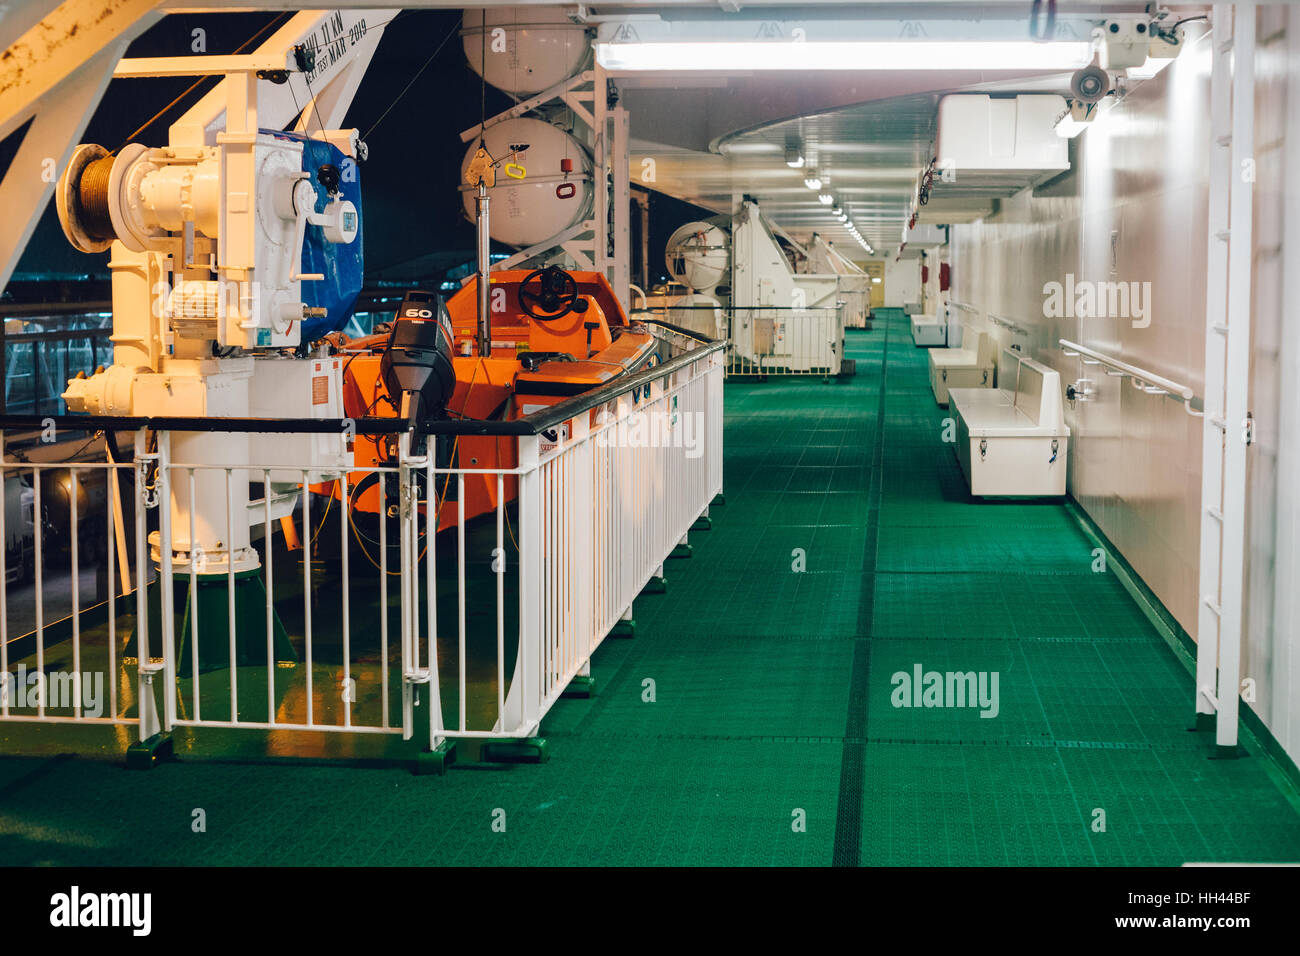 STOCKHOLM, Schweden - 11. Januar 2017: Boot auf dem Promenadendeck der Baltic Queen ursprünglich im Besitz von Estland ansässige Reederei Tallink zu retten. Stockfoto